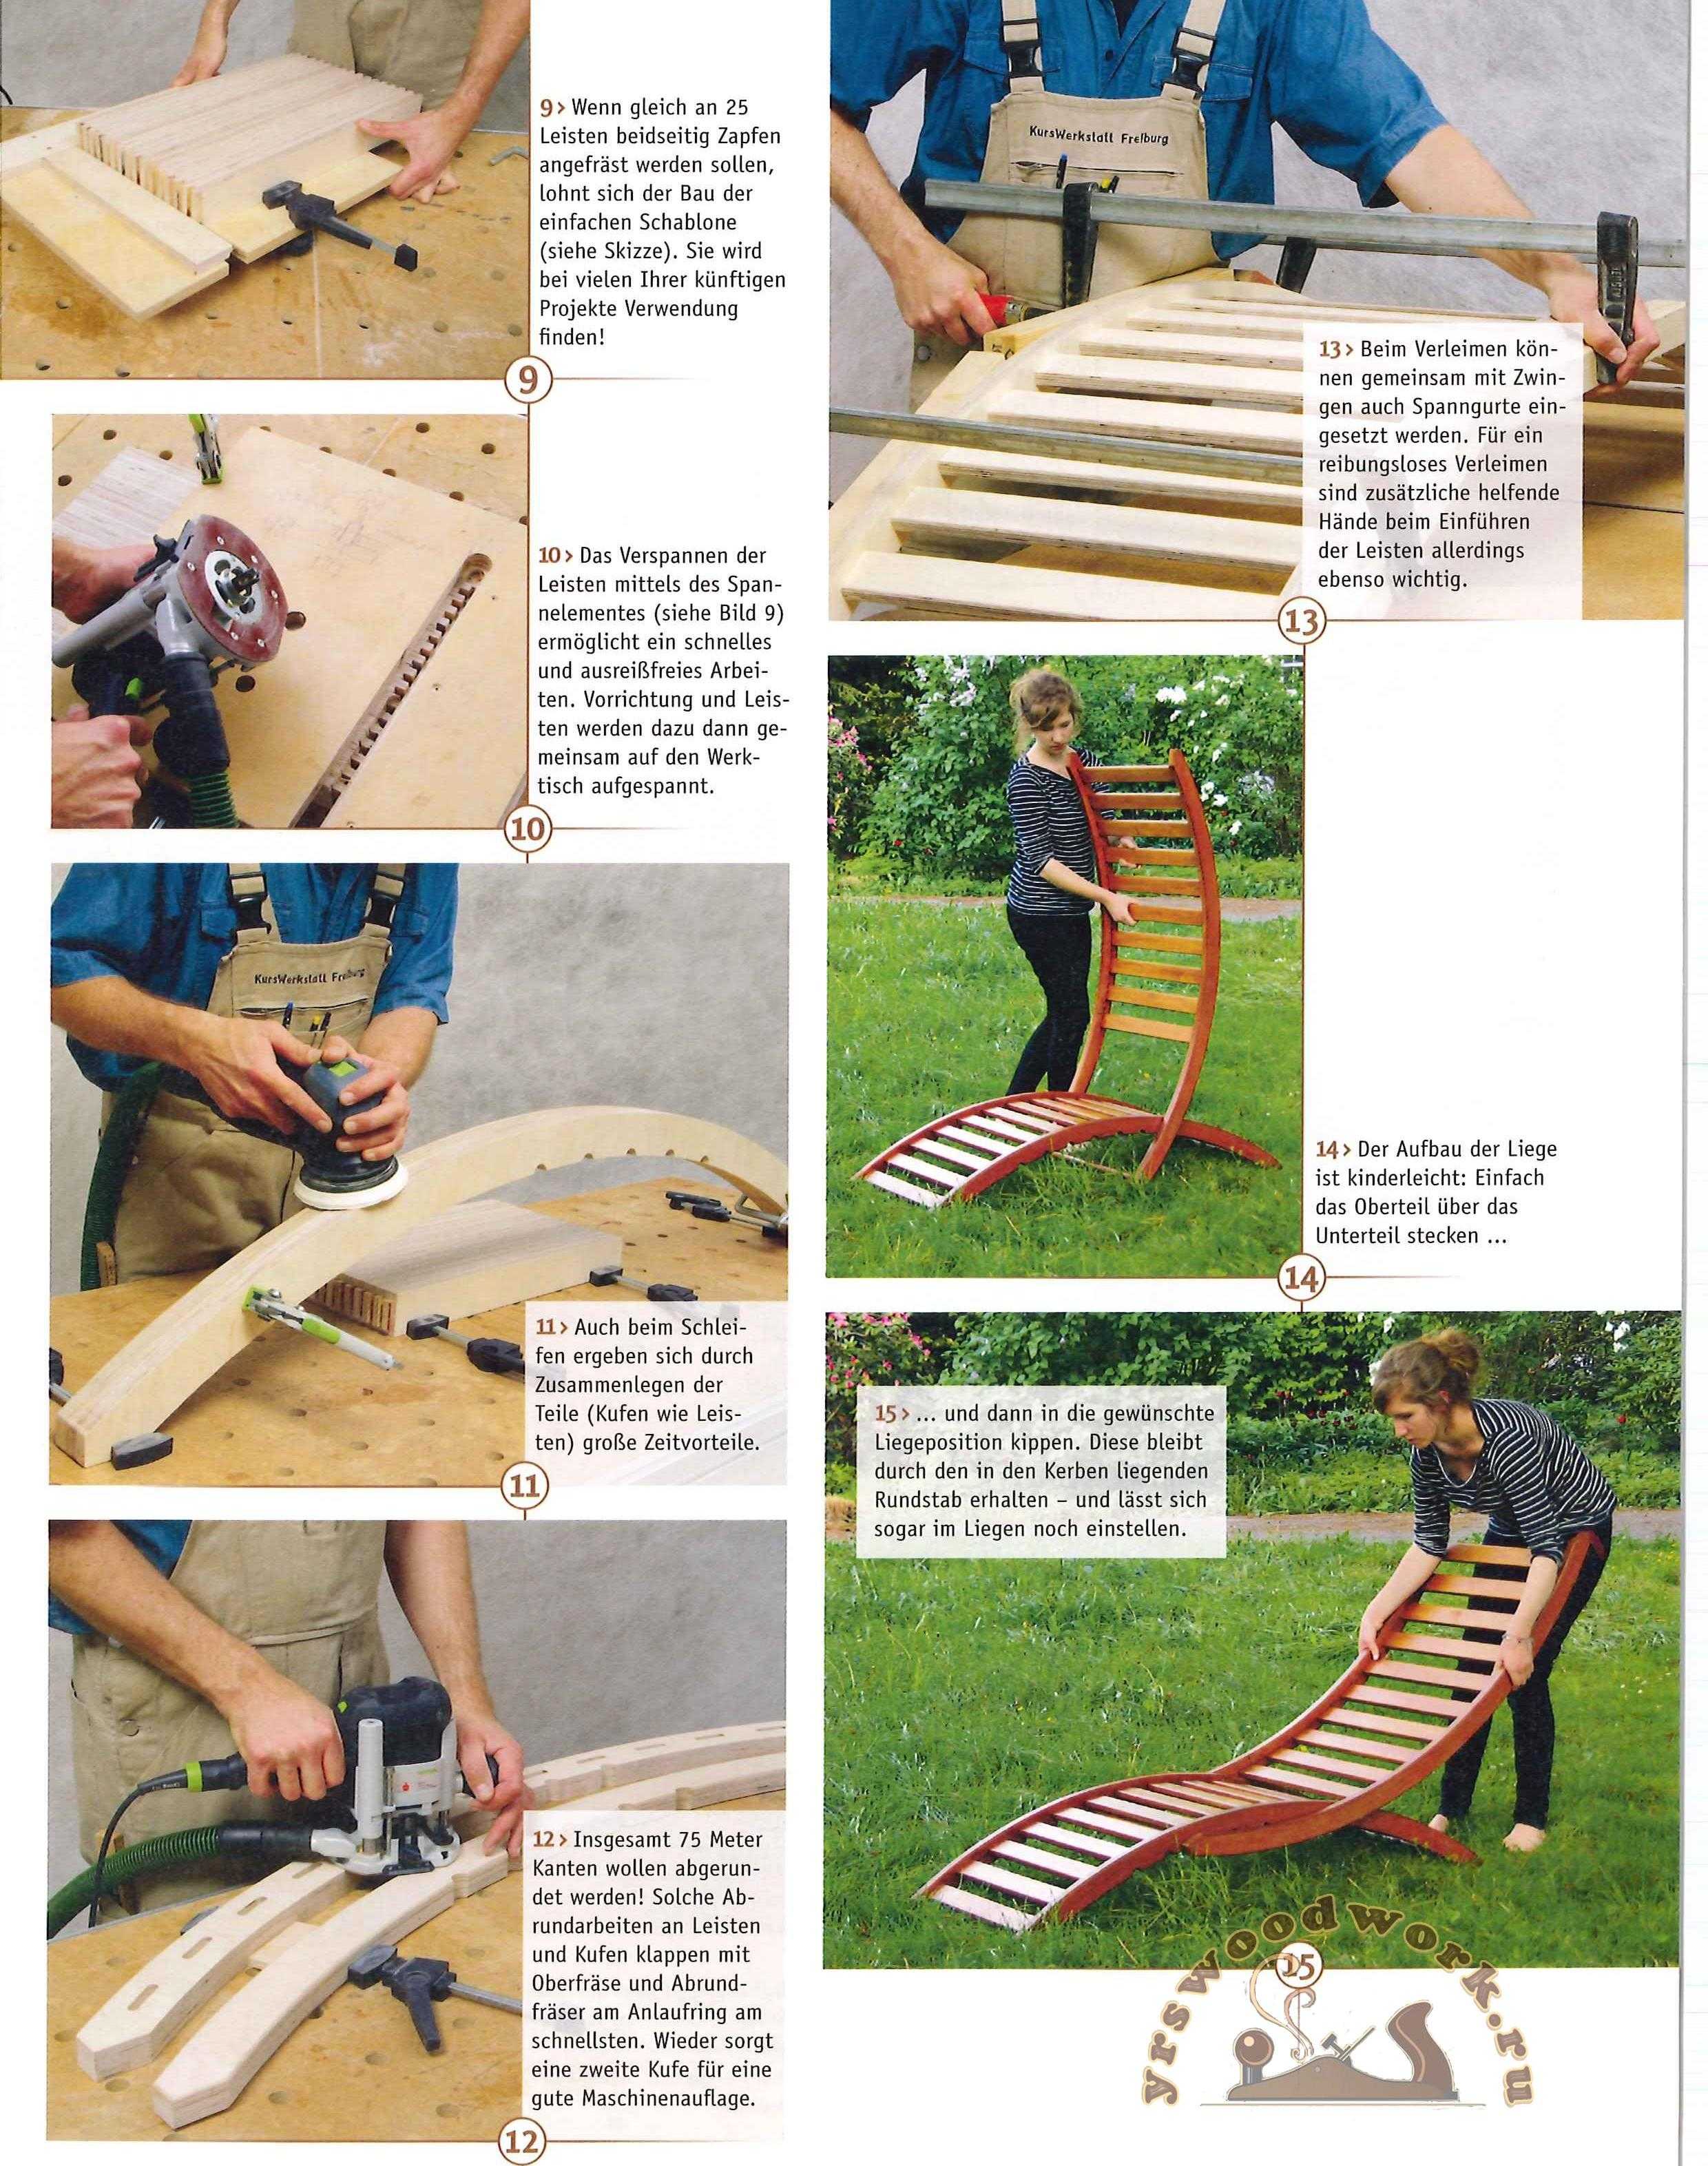 Шезлонг своими руками (38 фото): чертежи с размерами. как сделать кресло-шезлонг для дачи из поддонов? самодельные шезлонги из металла, фанеры и полипропиленовых труб